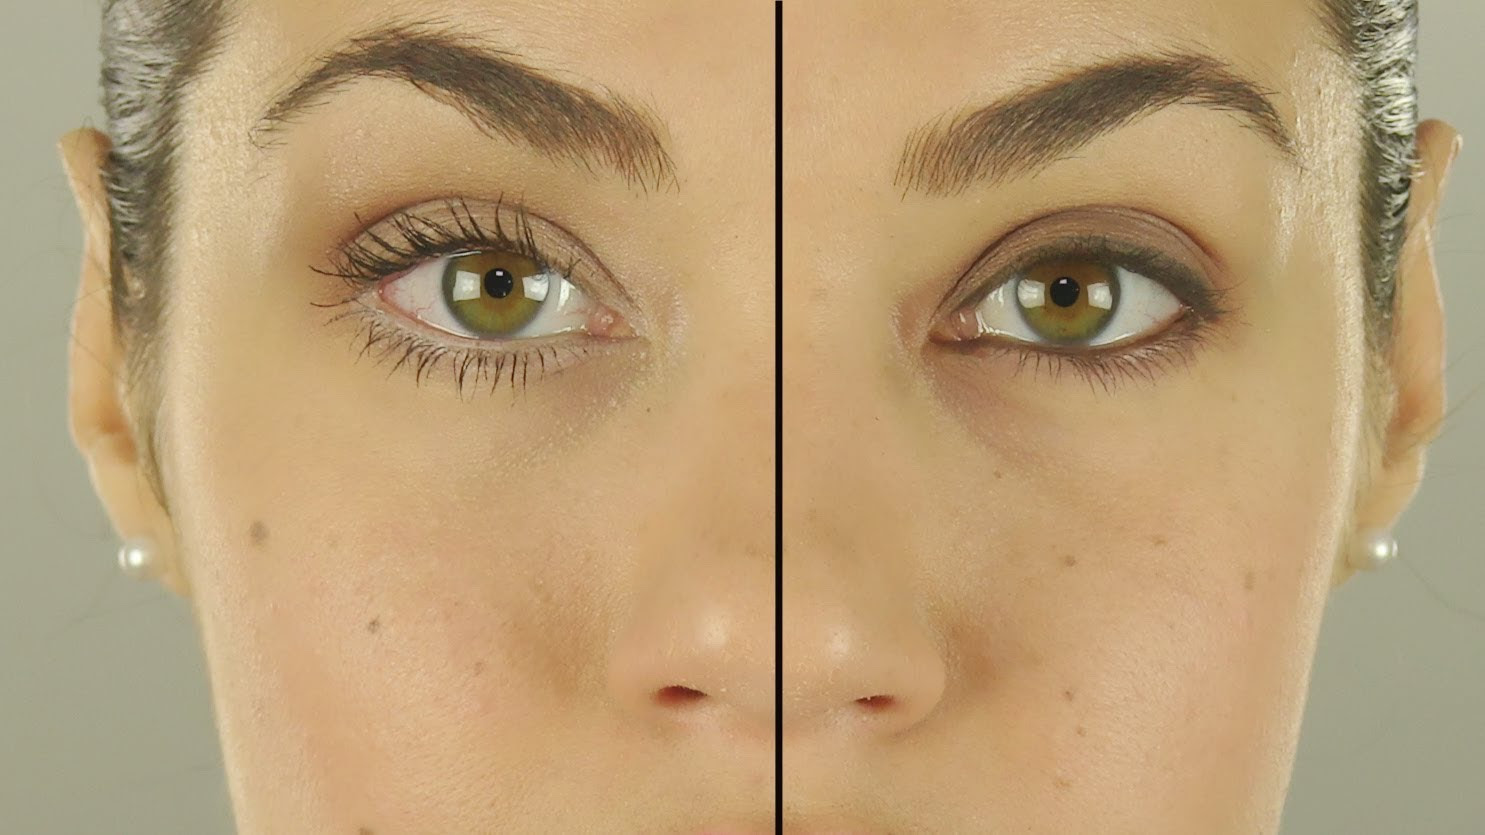 Makeup tricks to make eyes look bigger than kids